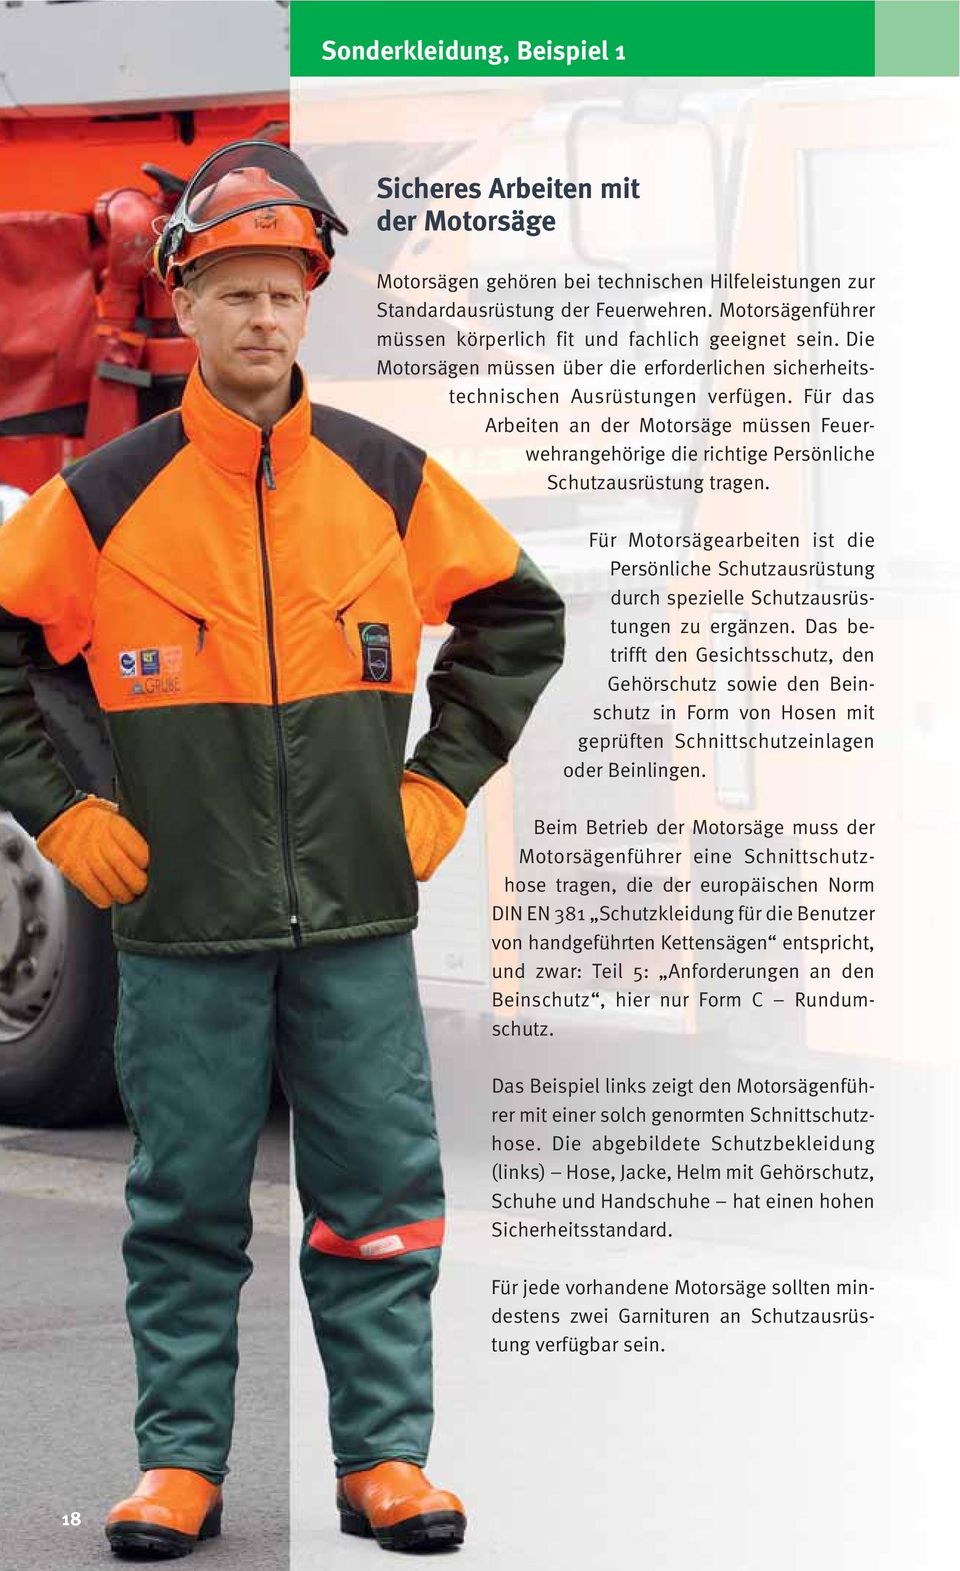 Für das Arbeiten an der Motorsäge müssen Feuerwehrangehörige die richtige Persönliche Schutzausrüstung tragen.